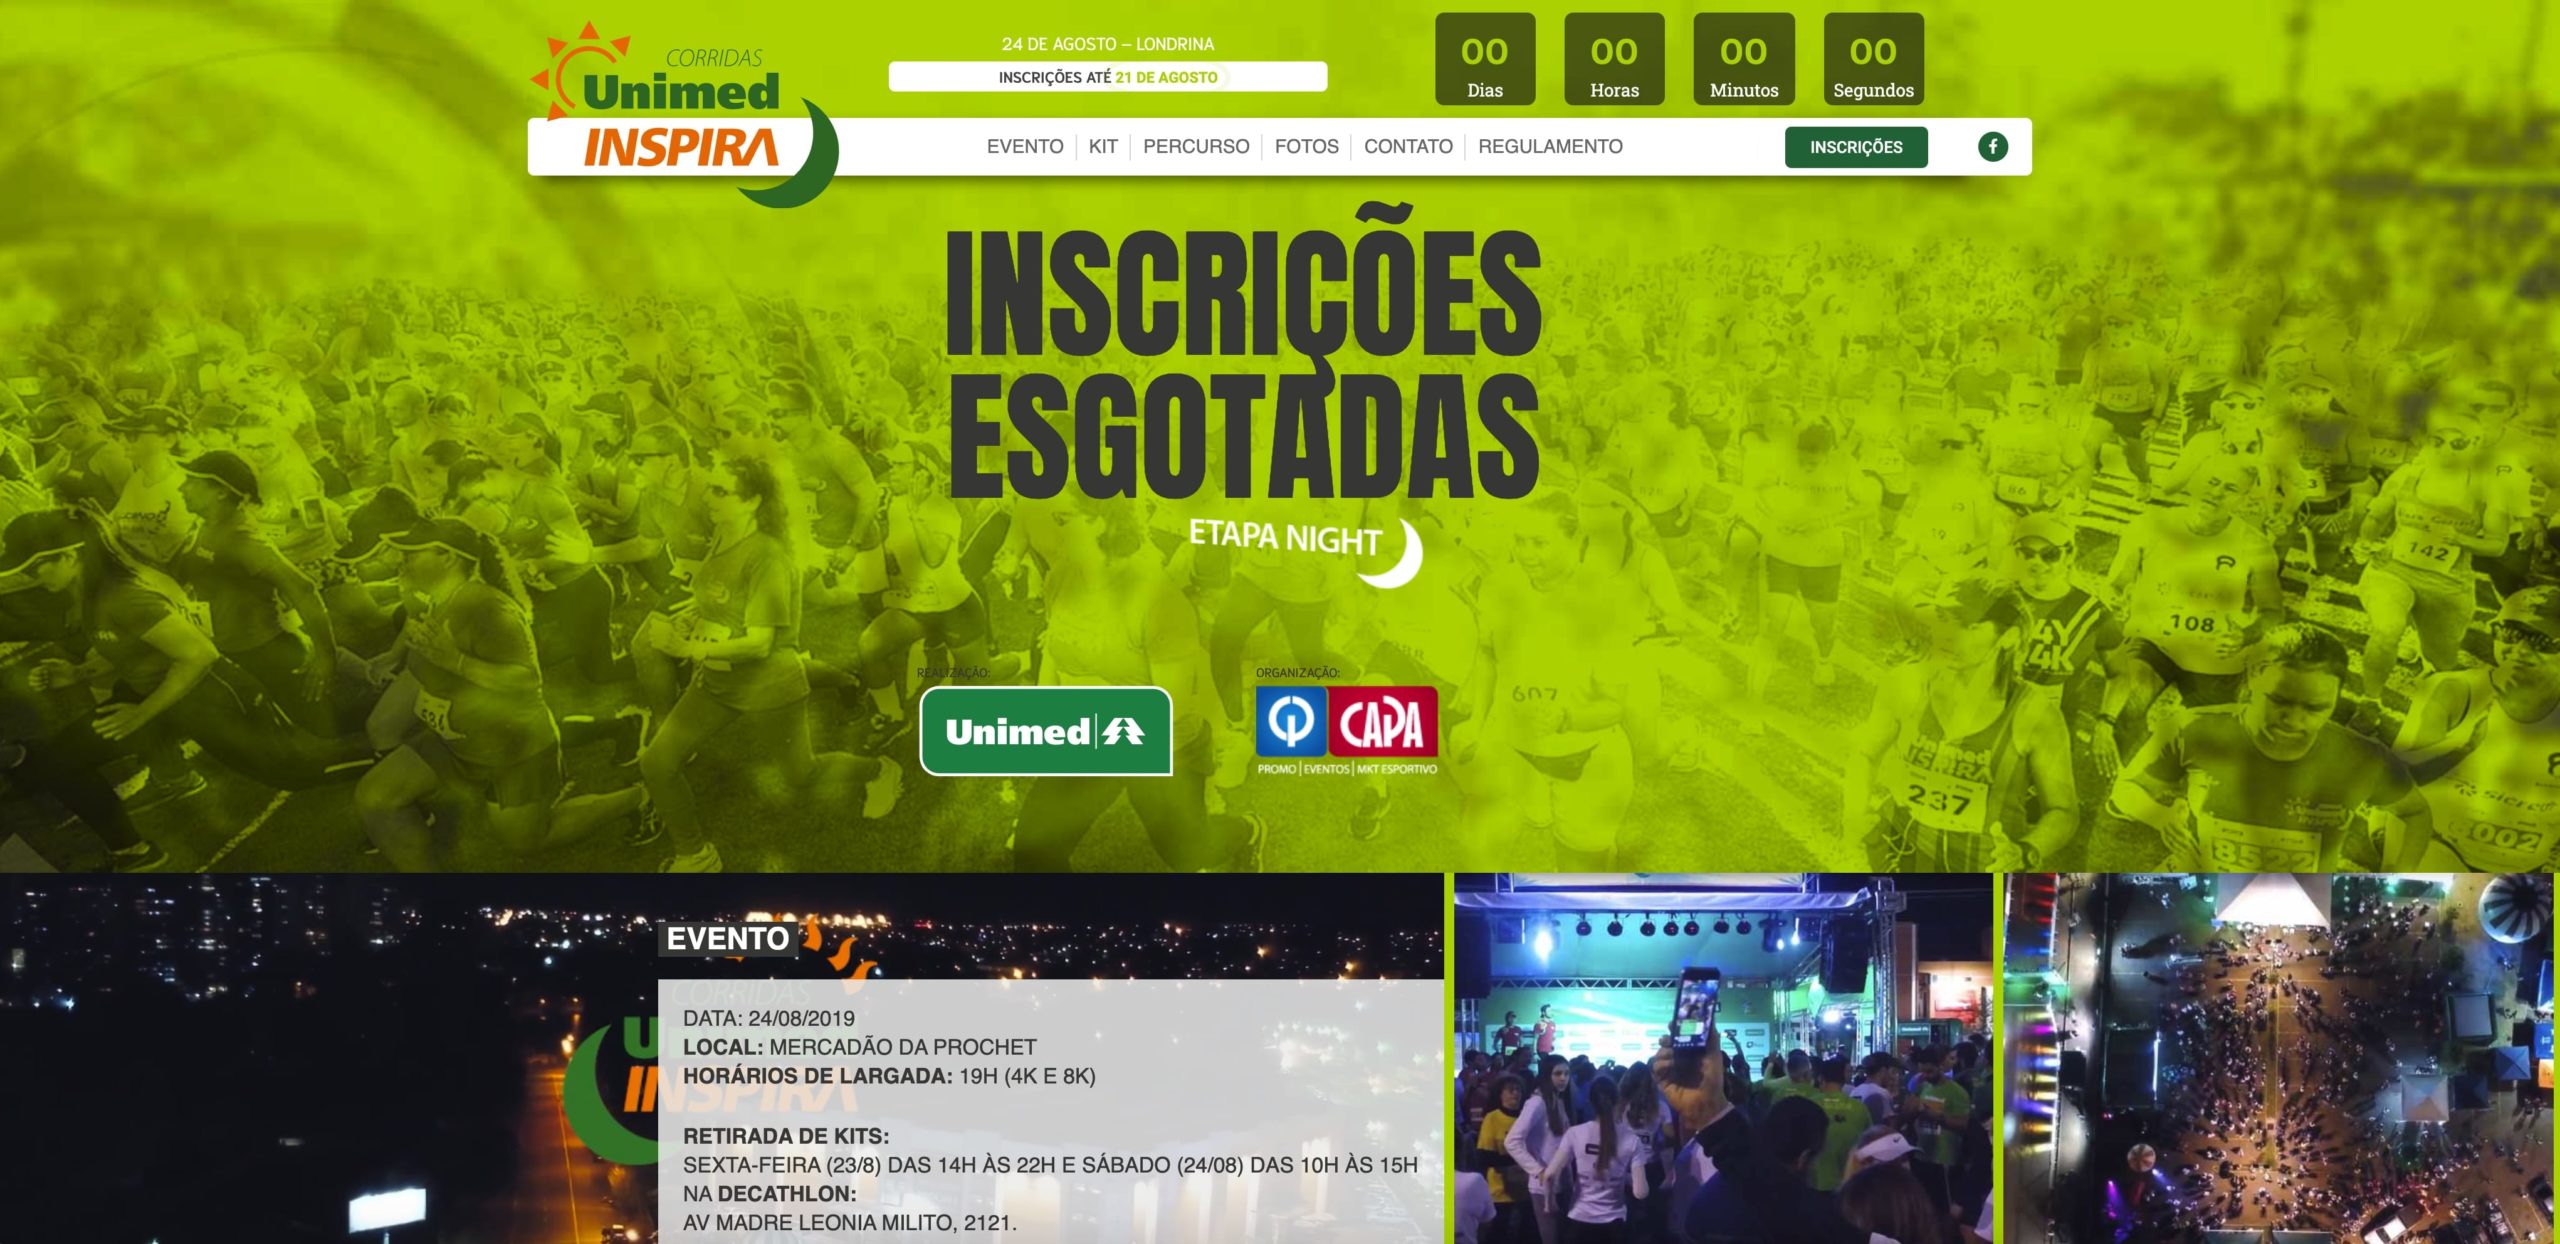 Portifolio Oxi Criacão de sites e desenvolvimento em Wordpress na região de Londrina e Paraná